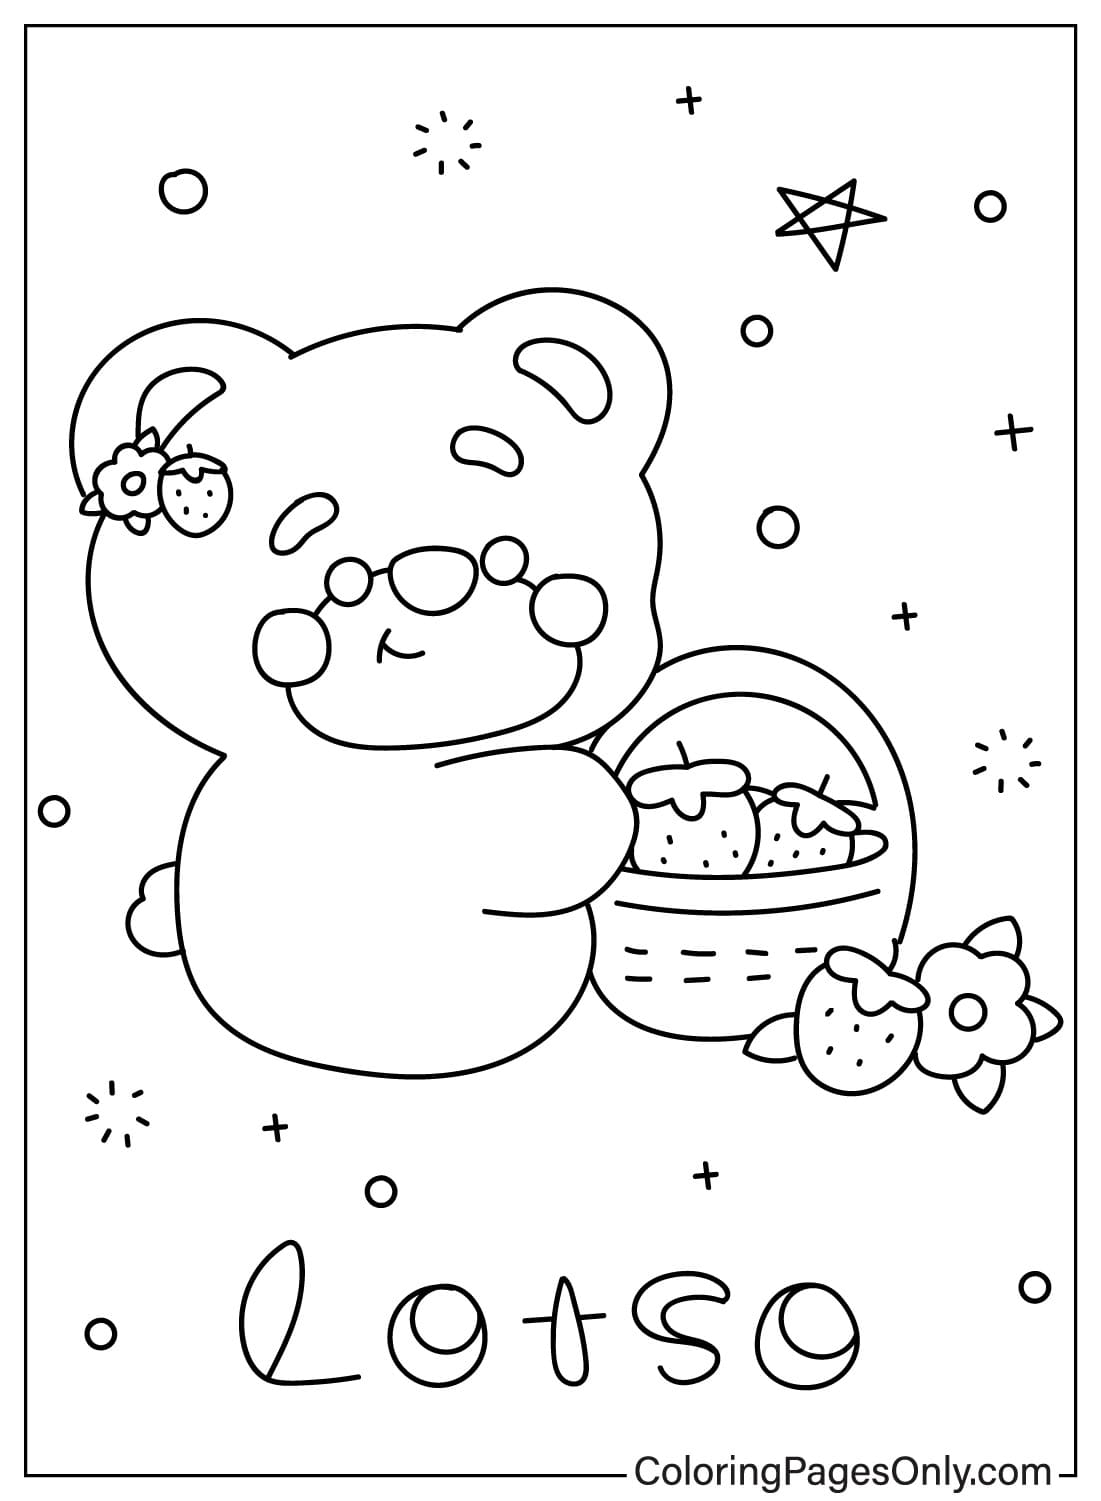 Cute Lotso Bear Coloring Page from Lotso Bear